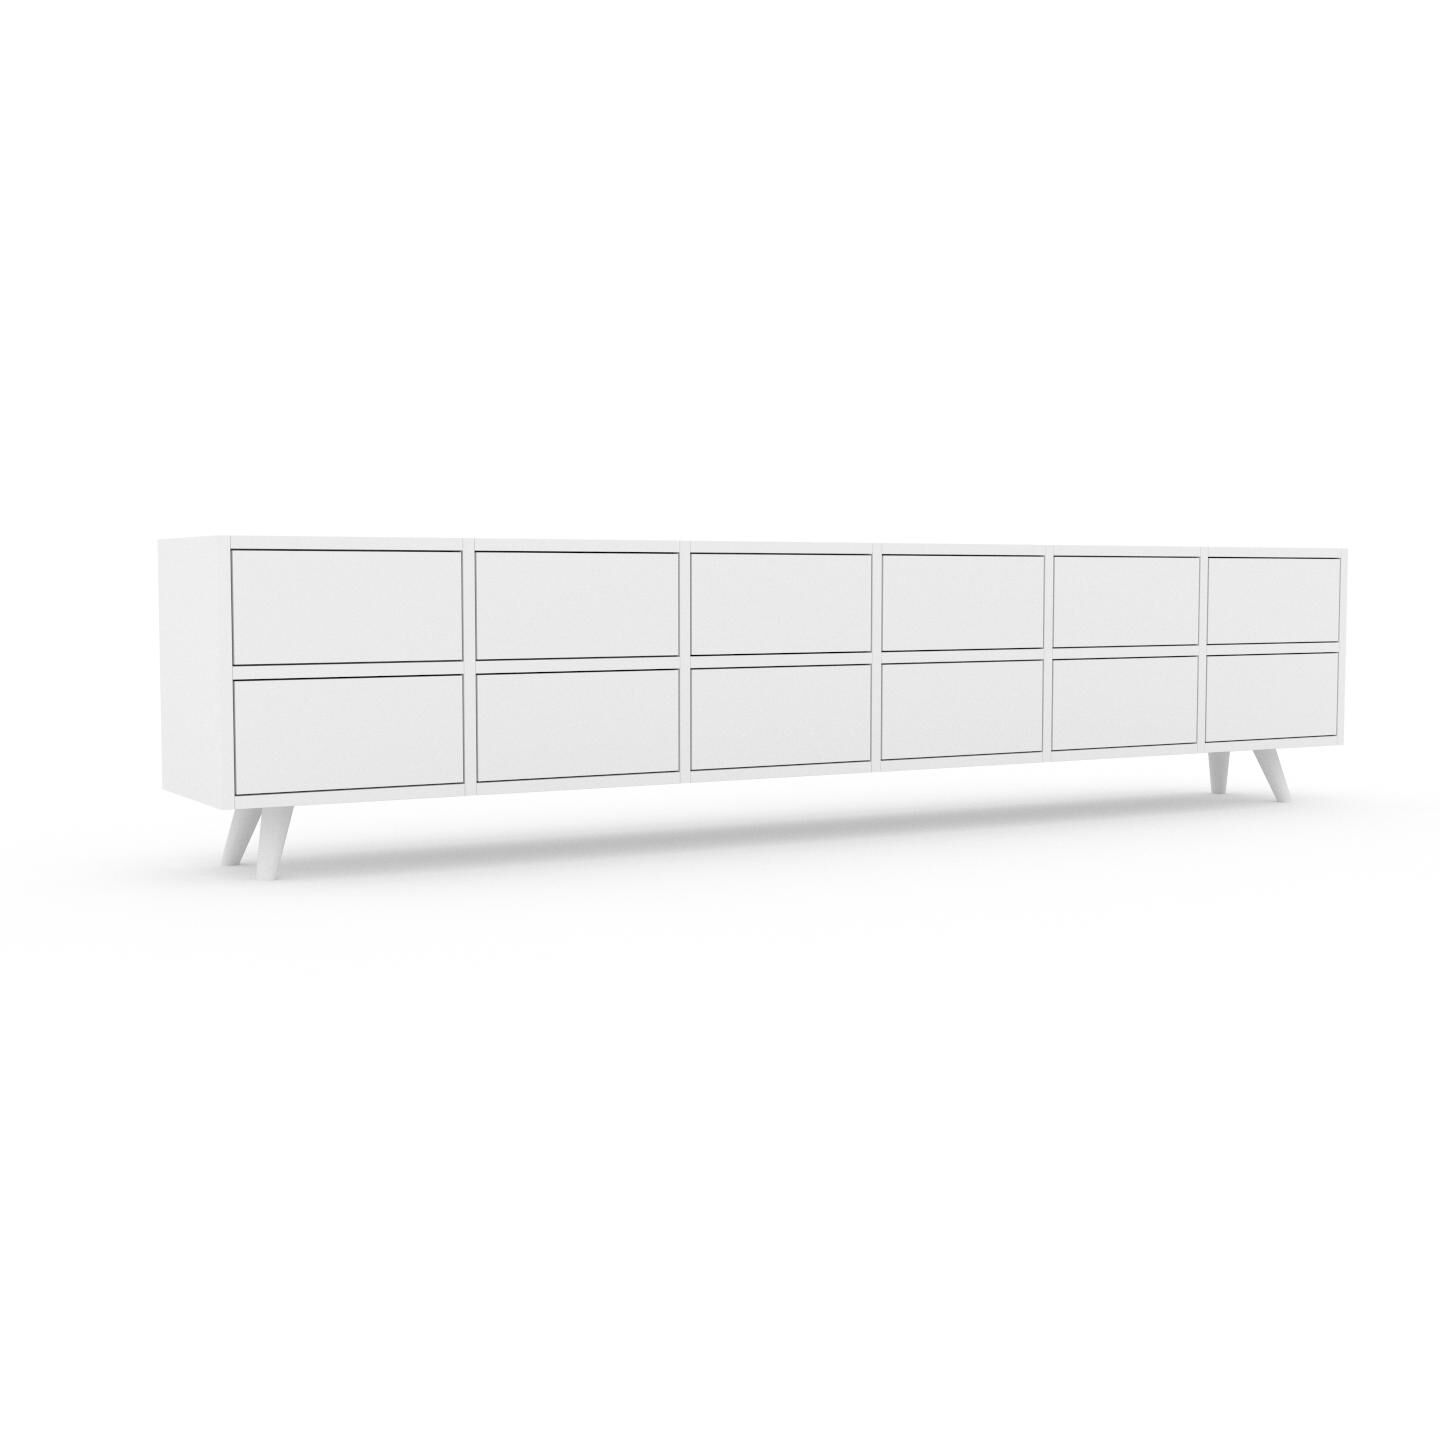 MYCS Wohnwand Weiß - Individuelle Designer-Regalwand: Schubladen in Weiß - Hochwertige Materialien - 233 x 53 x 35 cm, Konfigurator